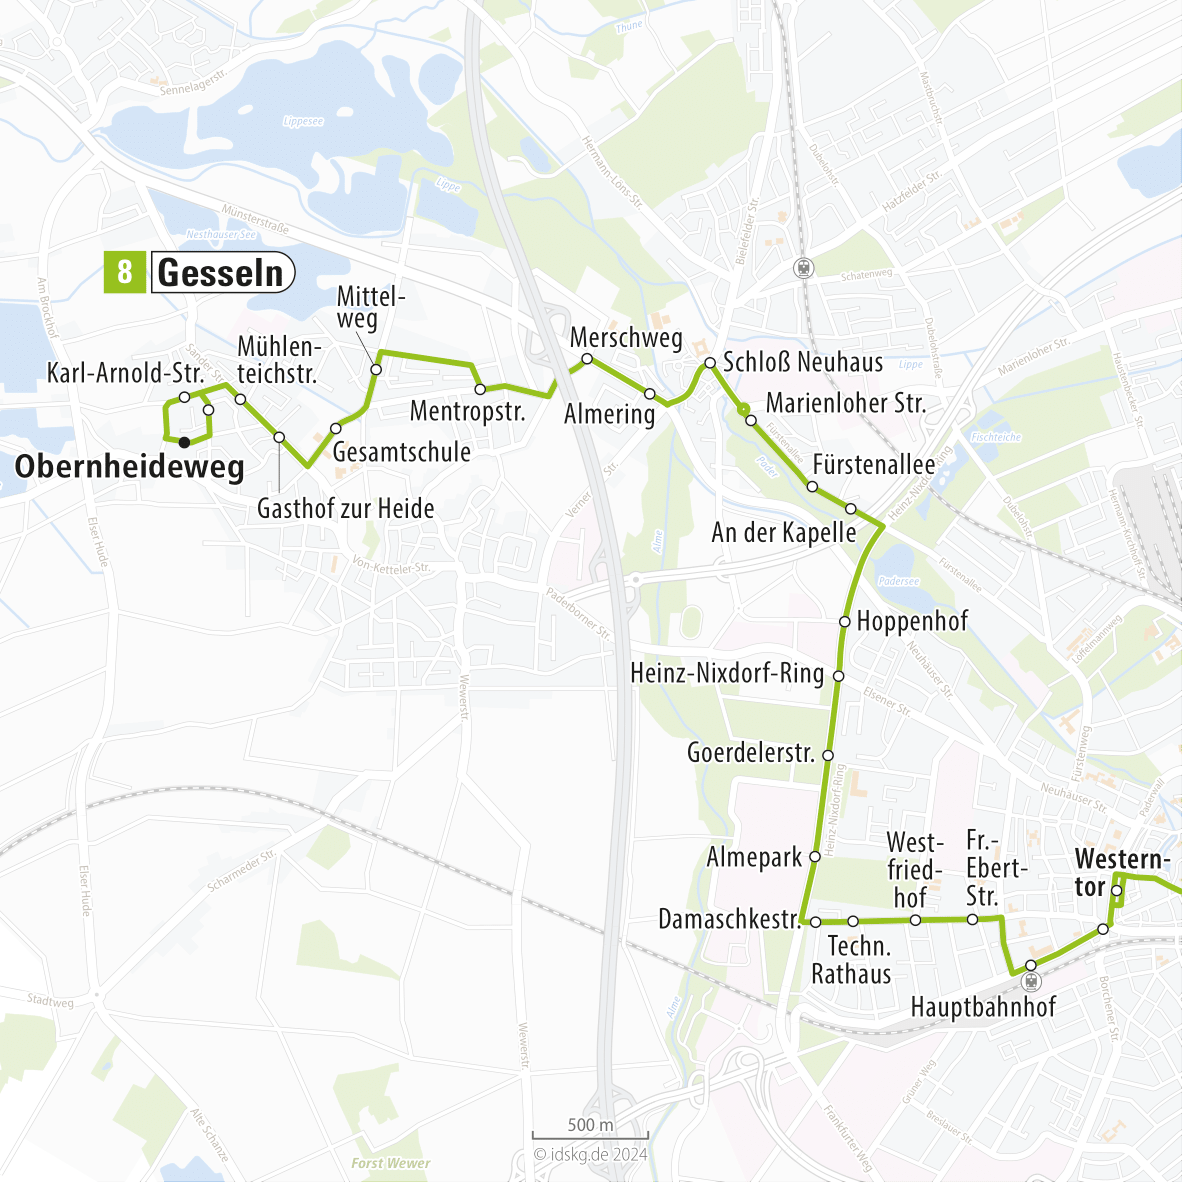 Kartenausschnitt der Linie 8 Gesseln bis Westerntor 15x15